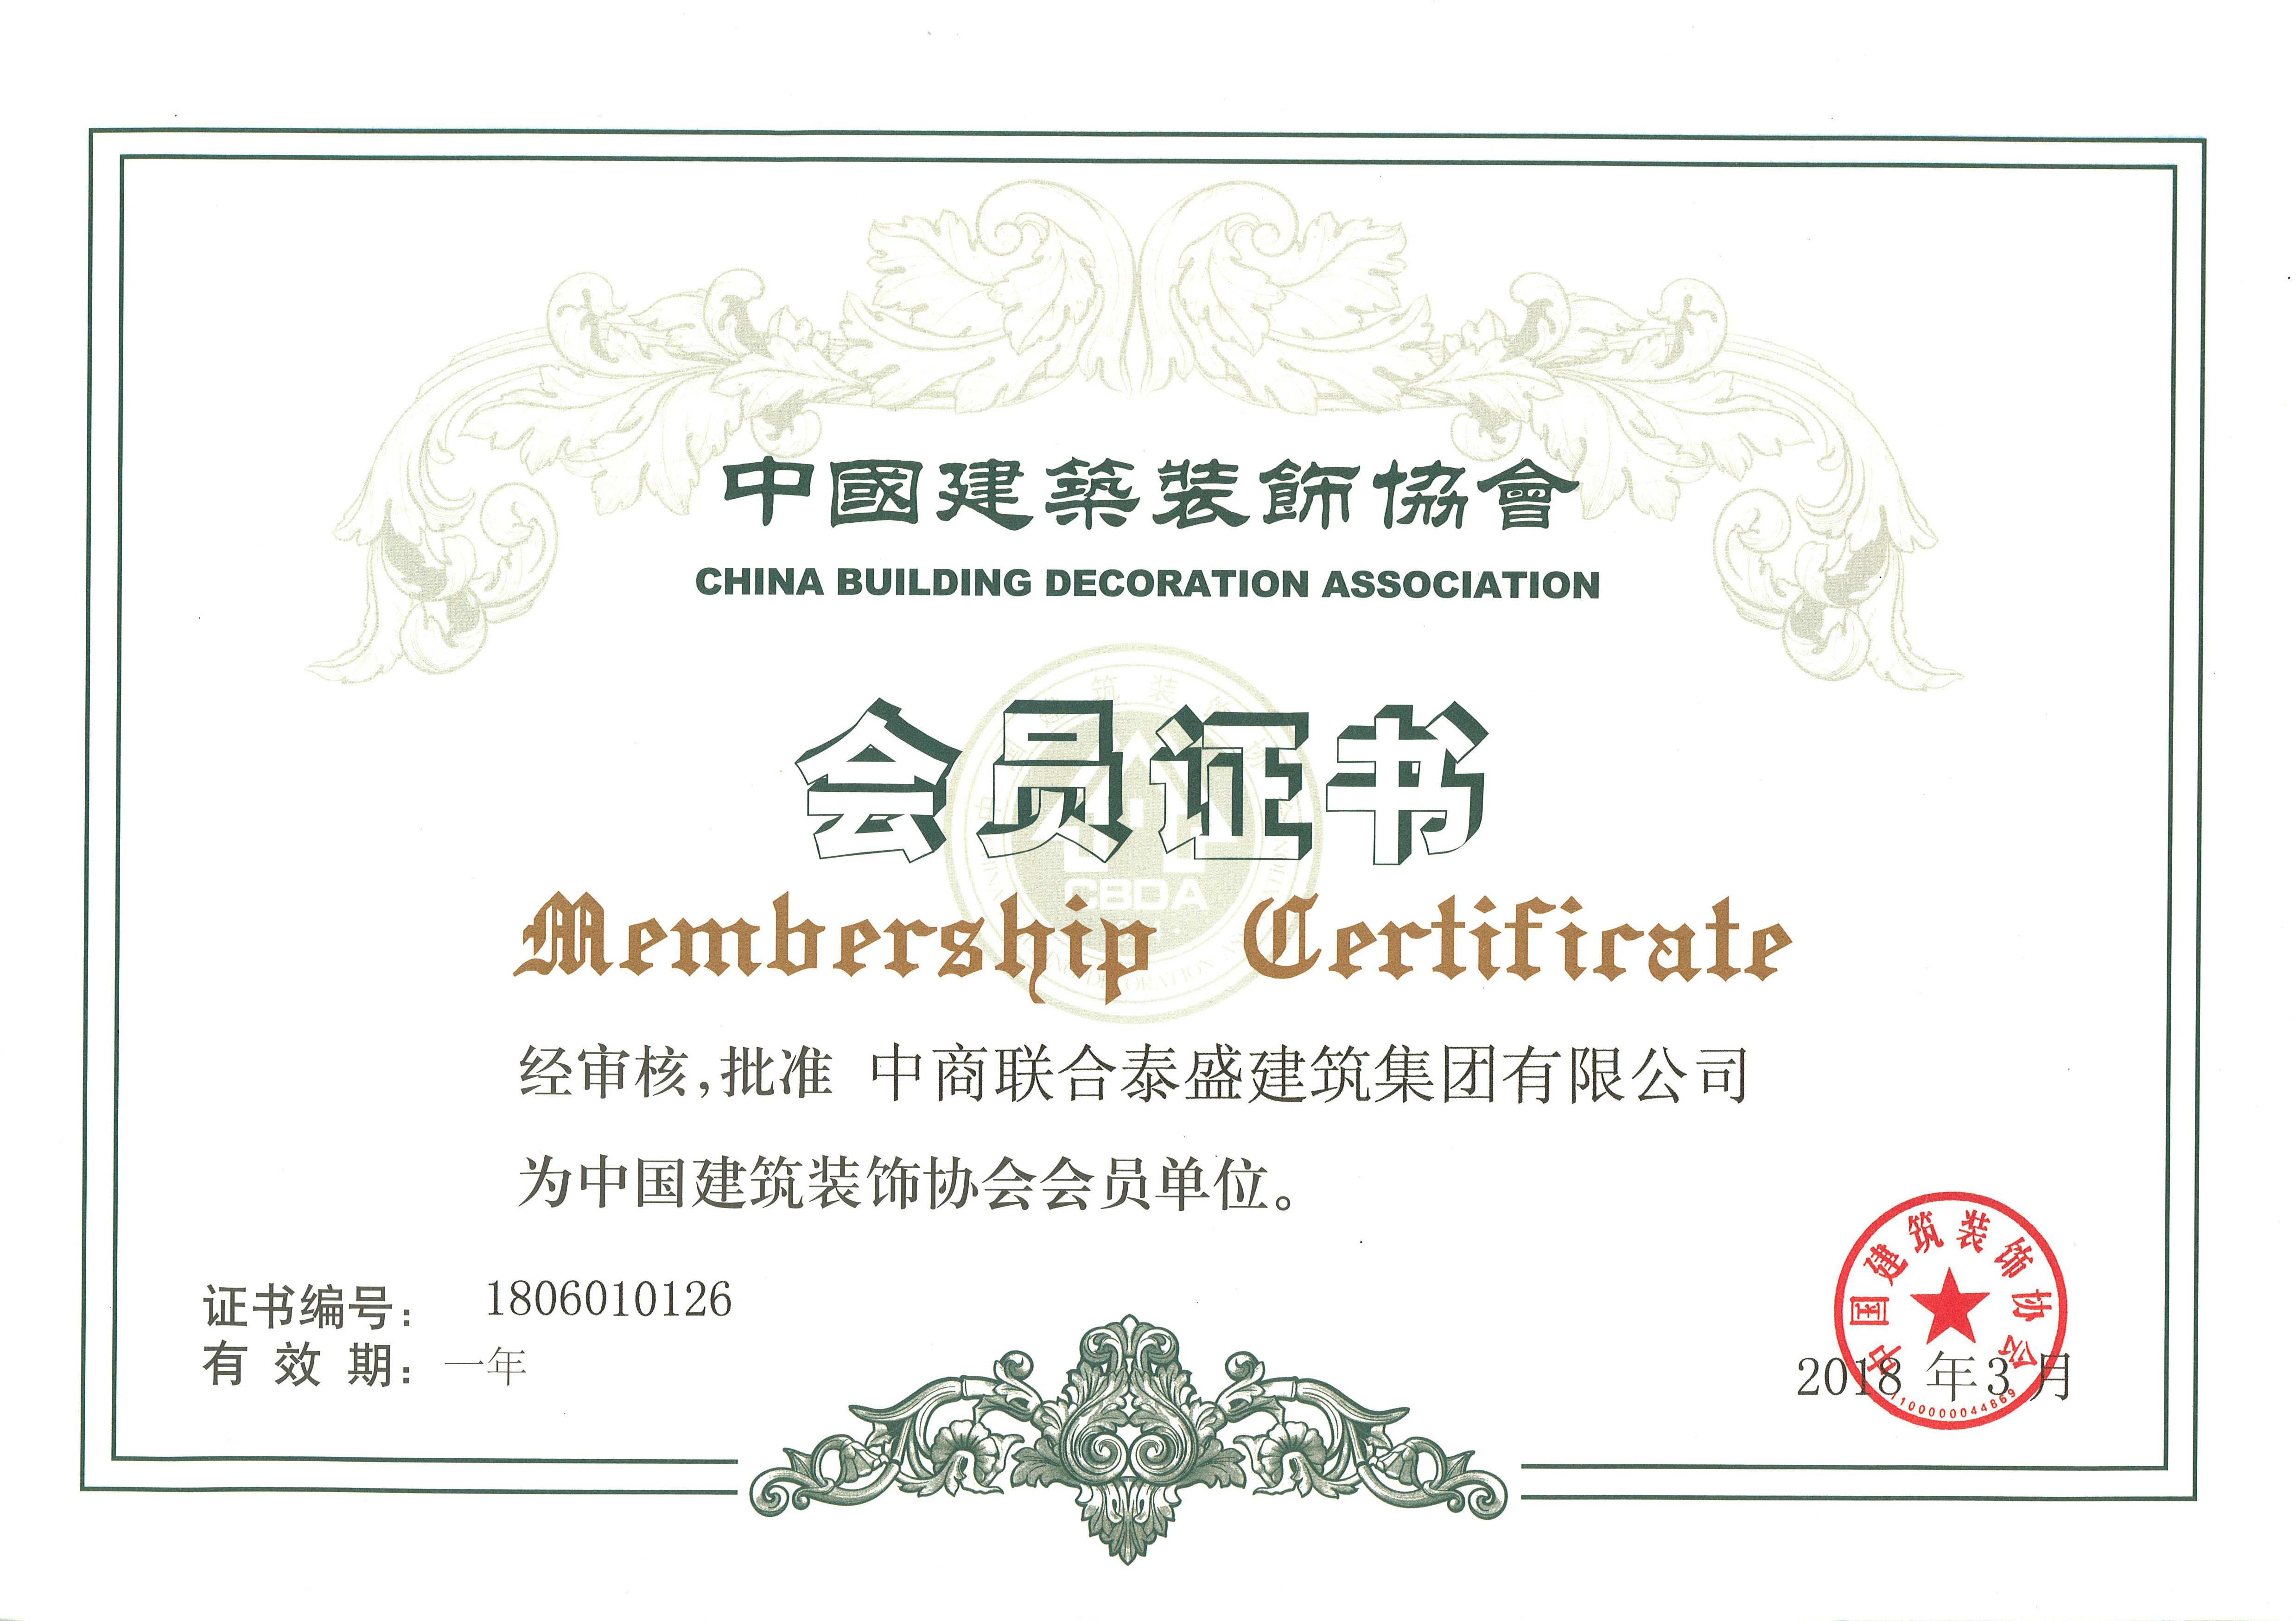 2018年中国建筑装饰协会会员